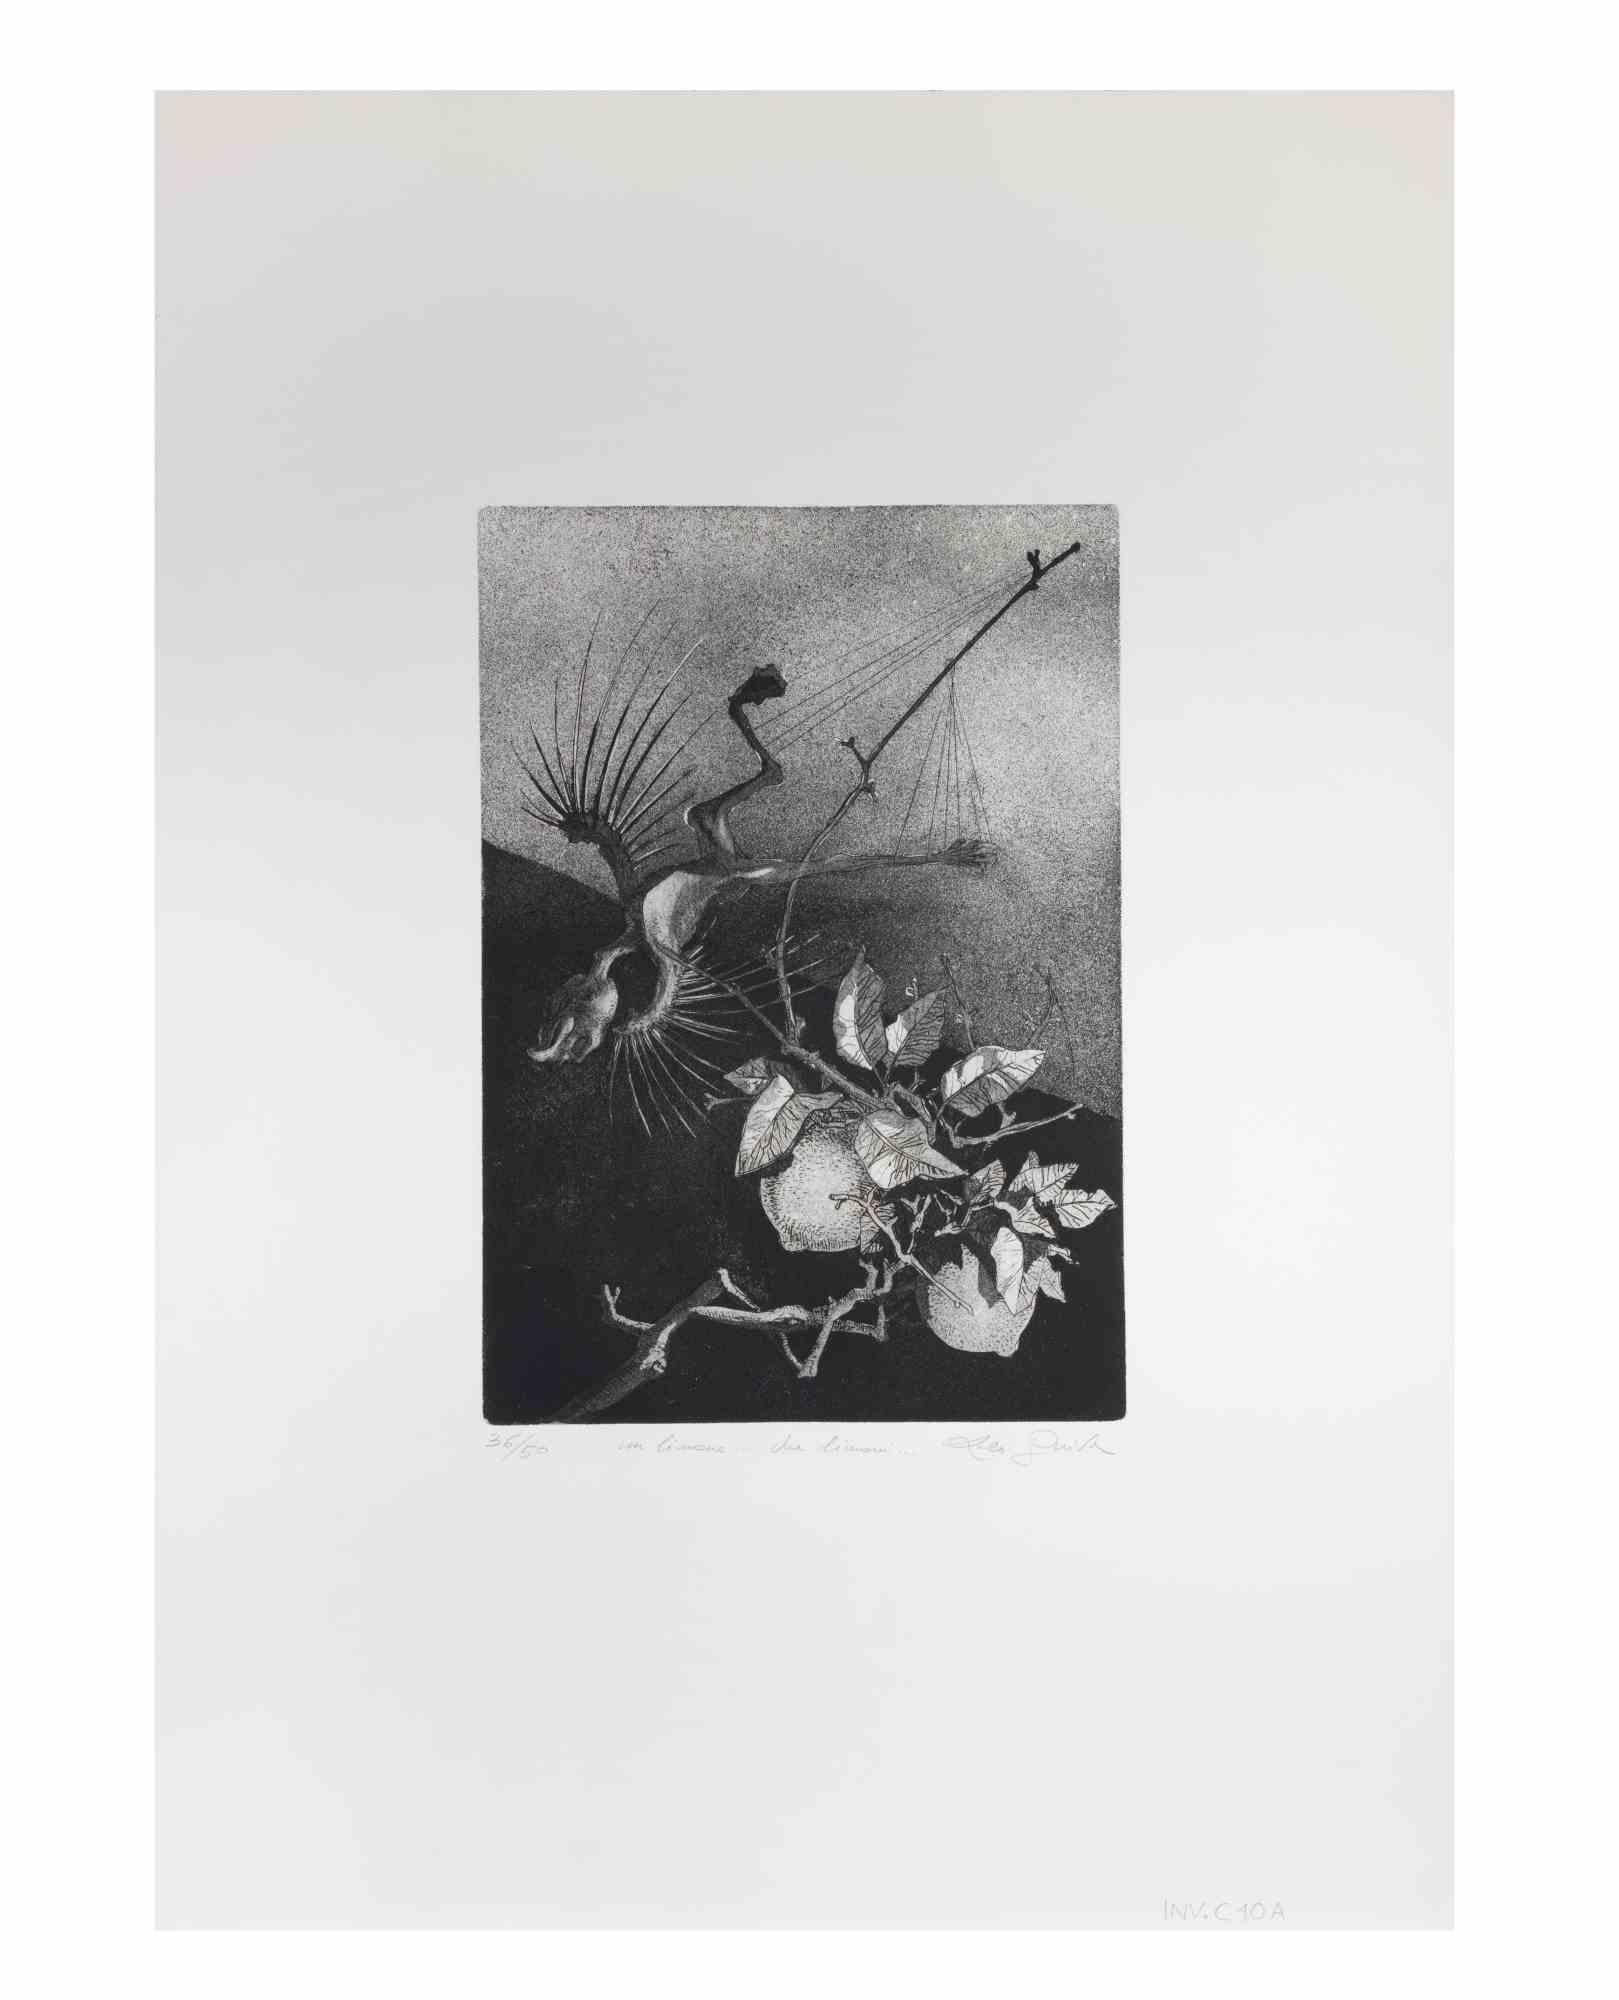 One Lemon Two Lemons ist ein Kunstwerk des zeitgenössischen italienischen Künstlers  Leo Guida (1992 - 2017) in den 1970er Jahren.

Original-Radierung in Schwarz-Weiß auf Papier.

Handsigniert am unteren rechten Rand, nummerierte Auflage von 50